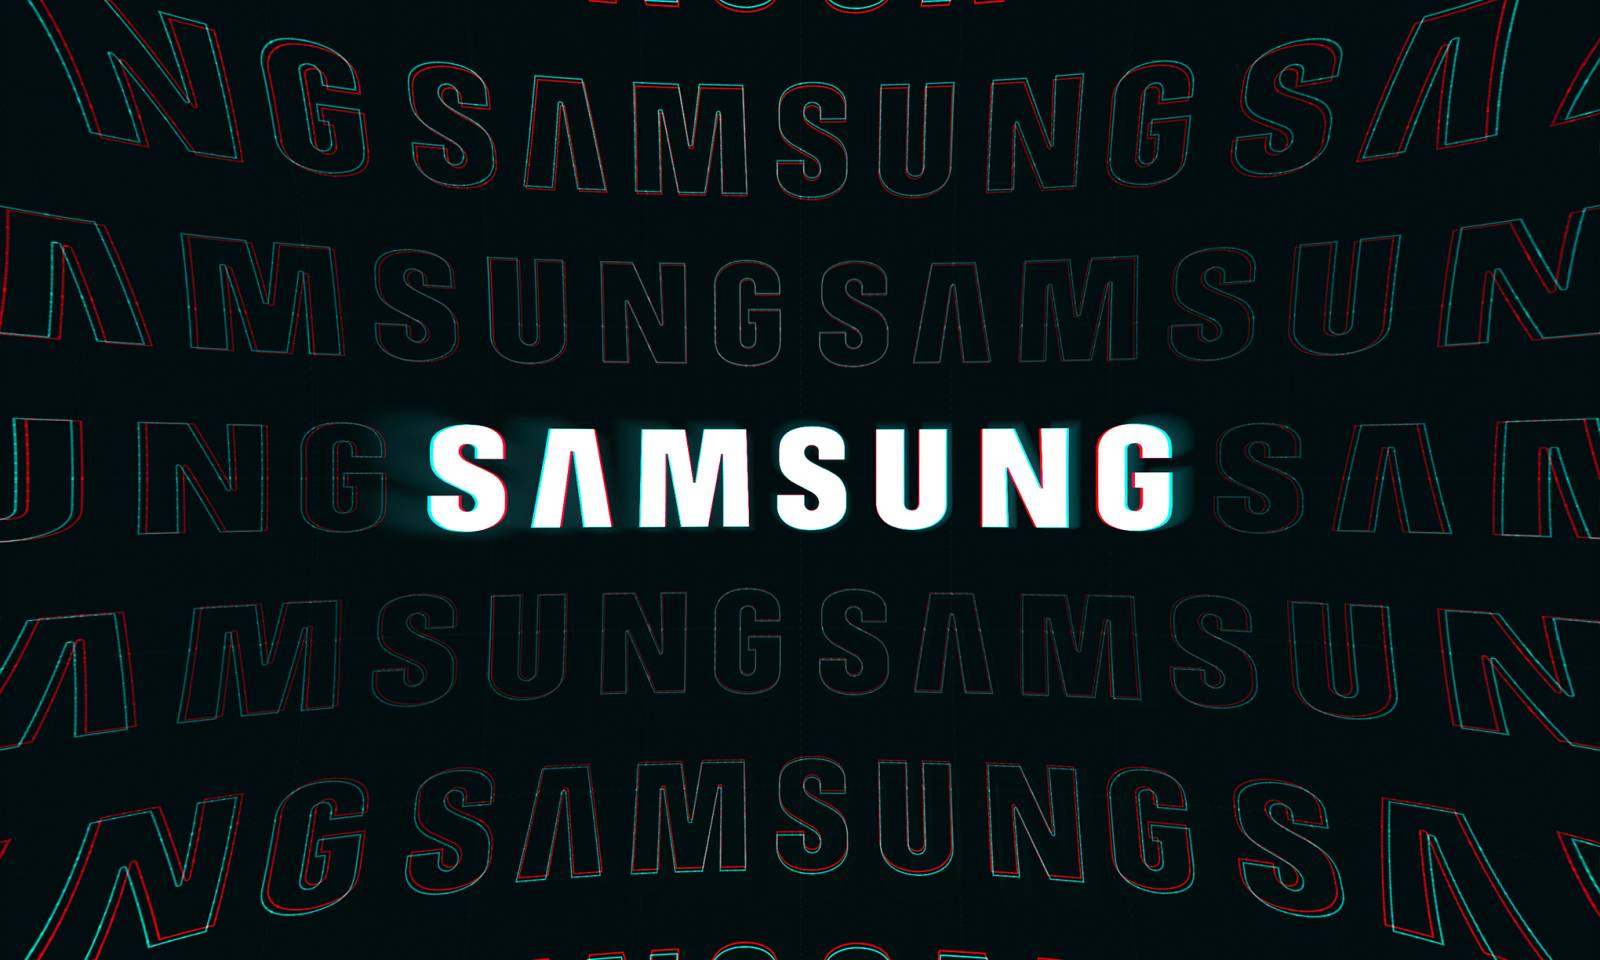 Samsung tillkännagivande överraskar användare